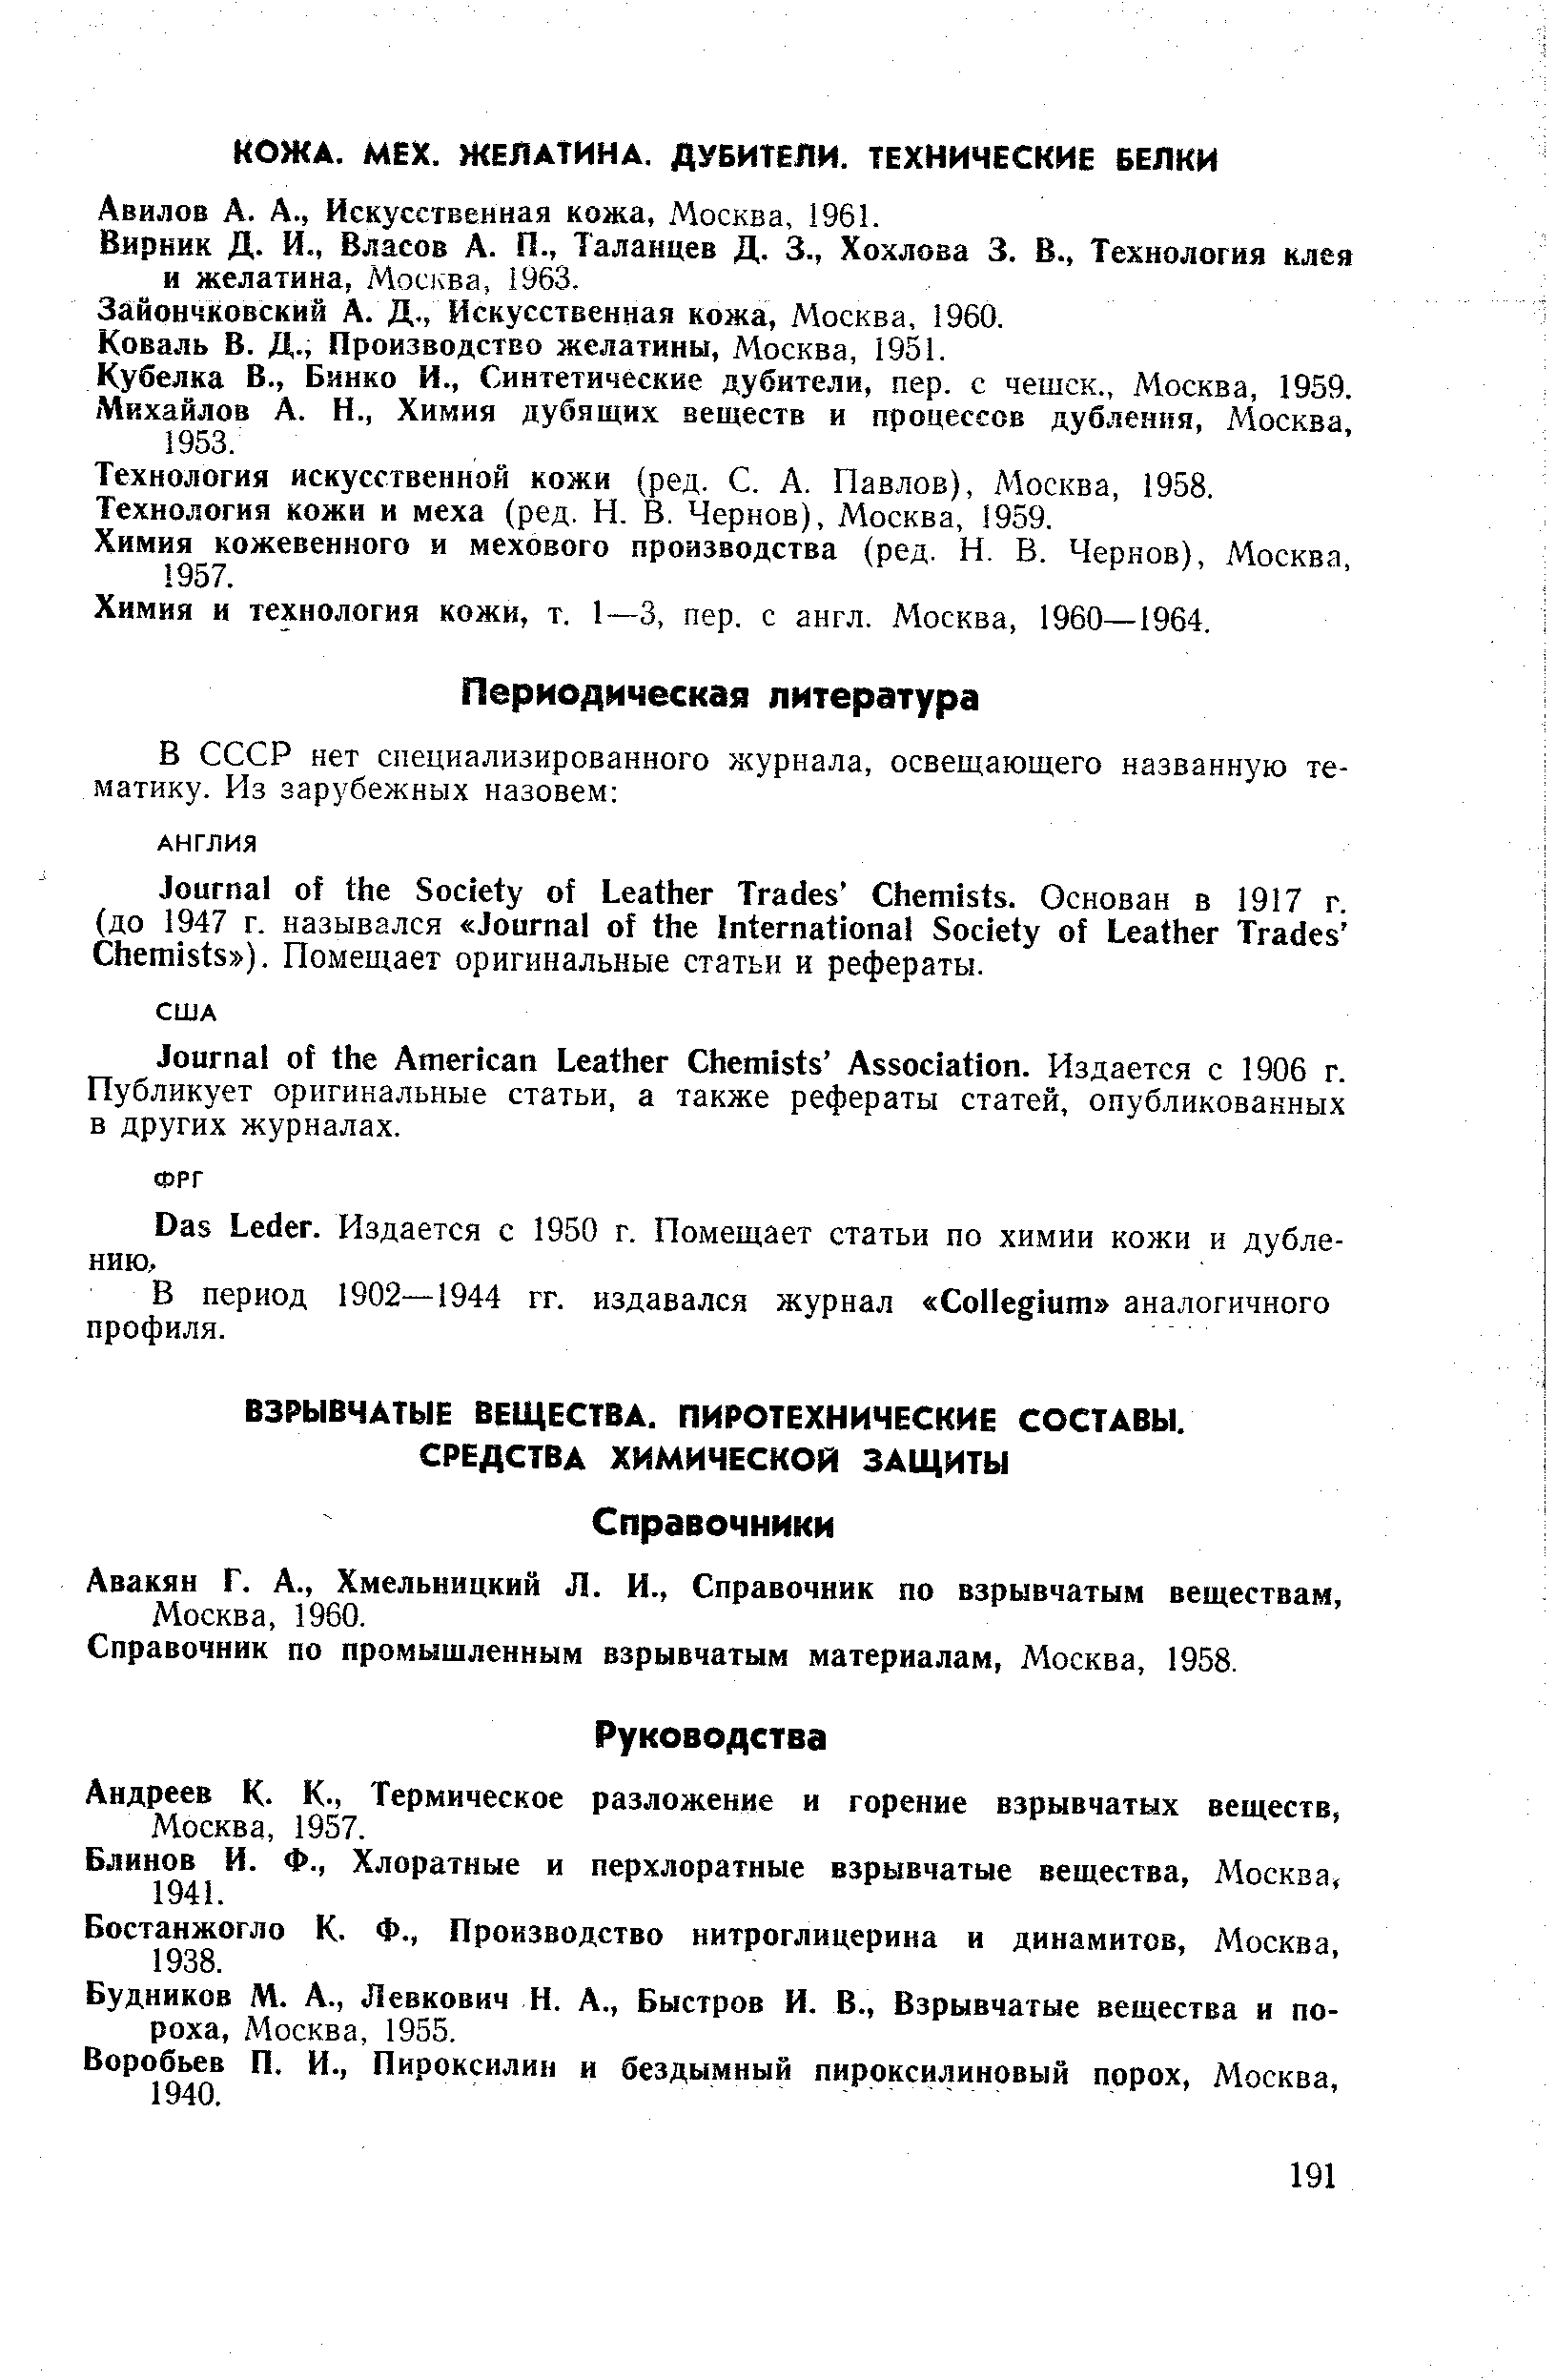 Авилов А. А., Искусственная кожа, Москва, 1961.